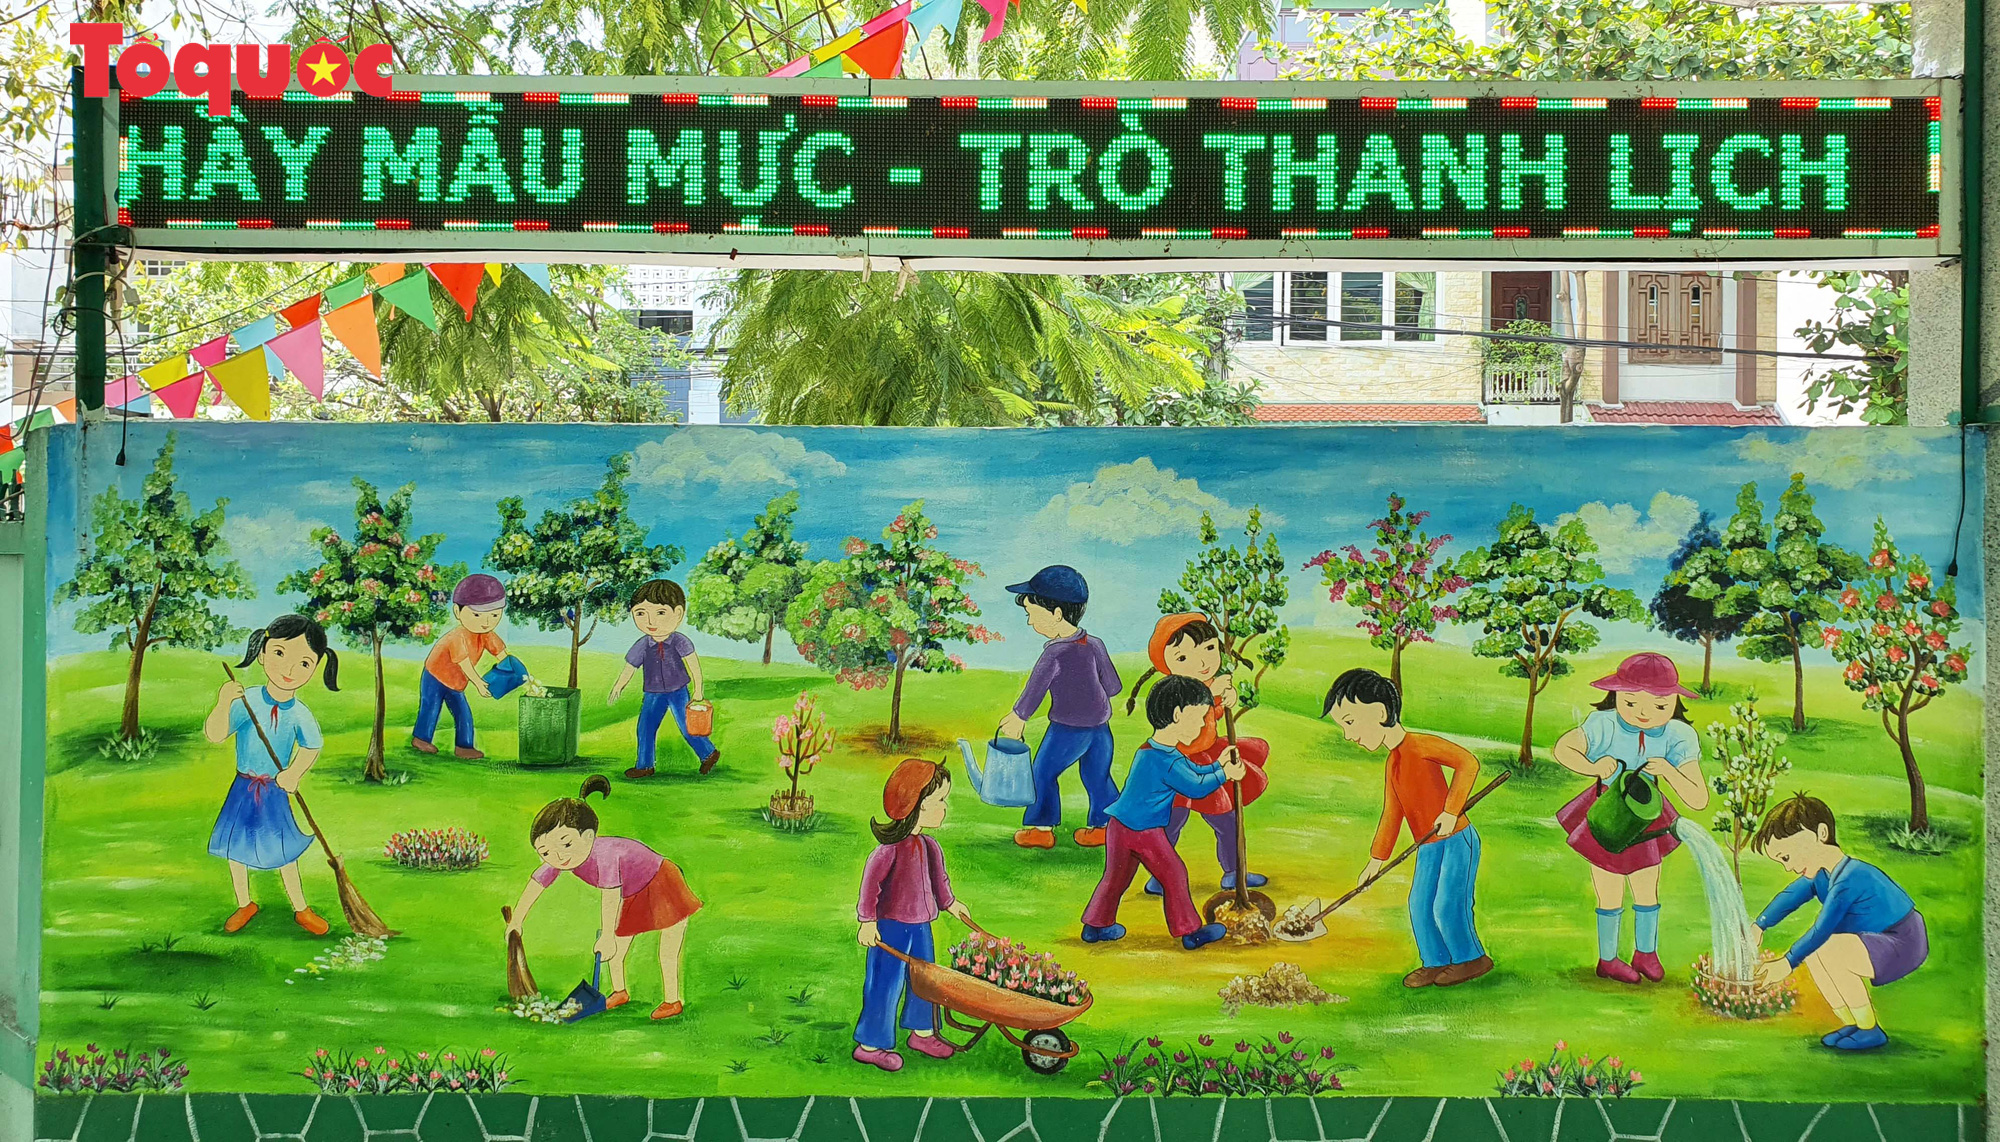 Nét vẽ từ các học sinh và thầy giáo với mong muốn tạo ra những bức tranh đẹp sẽ góp phần làm đẹp thêm cuộc sống. Hãy cùng xem các bức tranh và tìm hiểu thêm về truyền thống văn hóa vẽ tranh của Việt Nam.